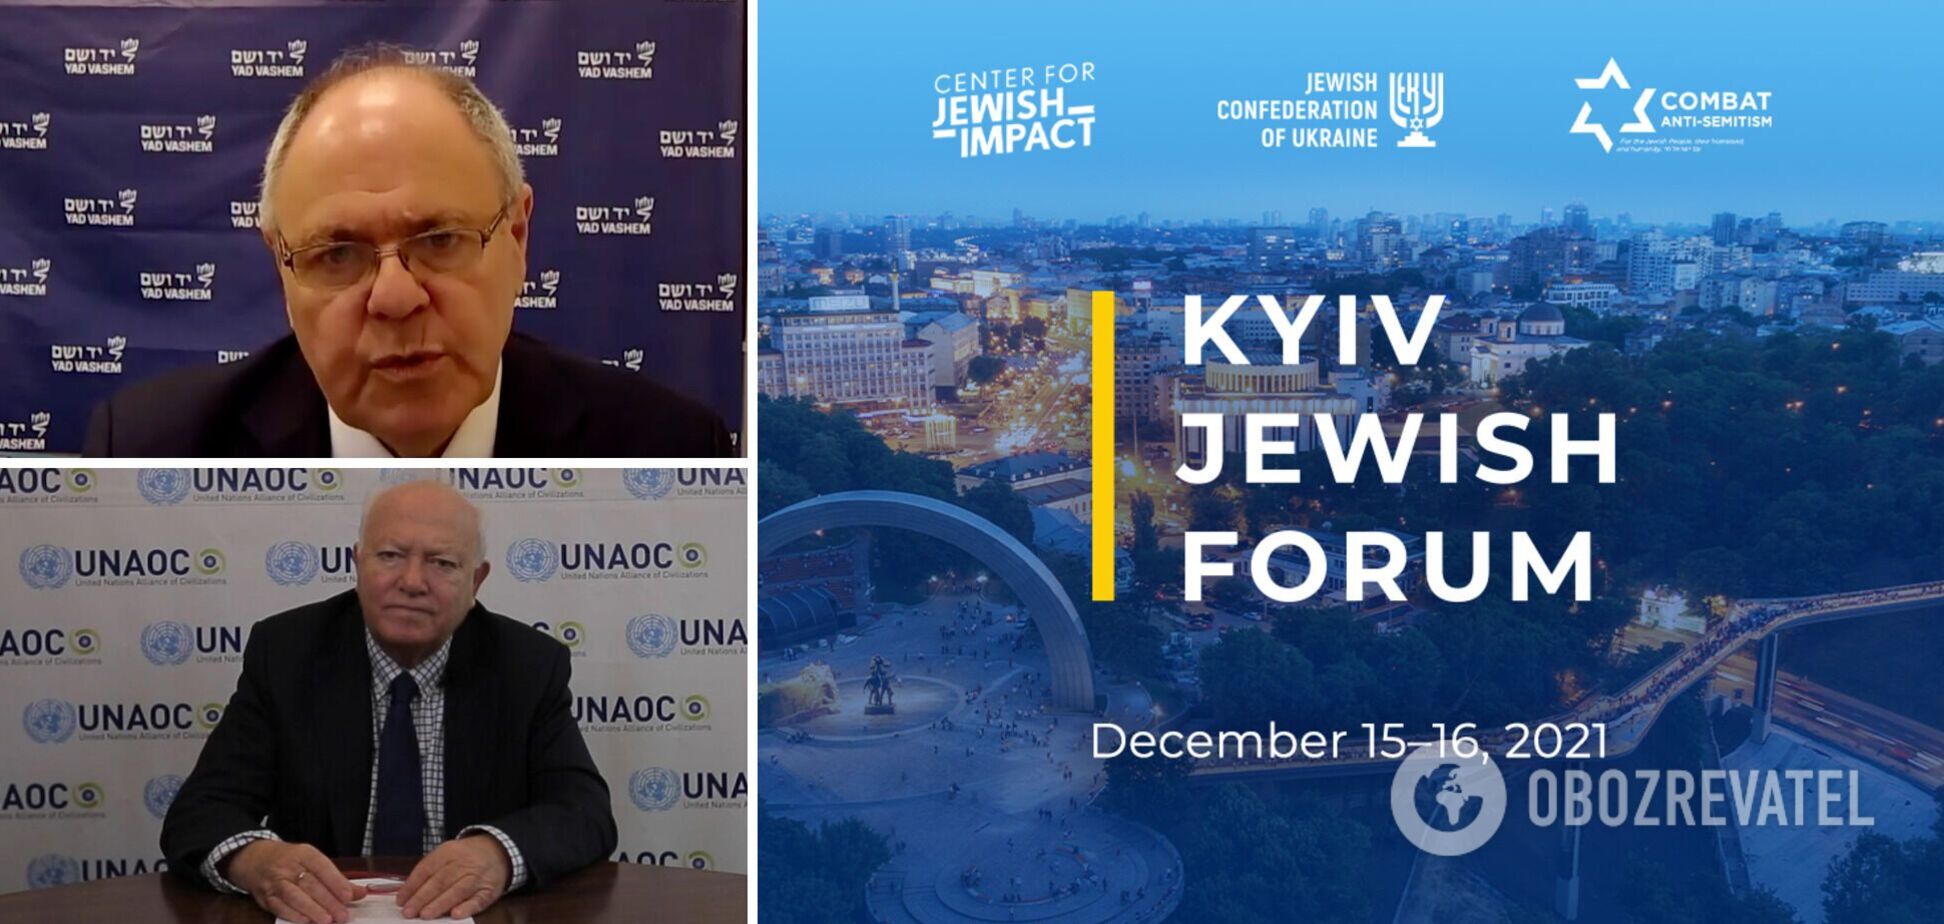 Kyiv Jewish Forum: на форумі обговорили проблему заперечення Голокосту та зростання антисемітизму у світі